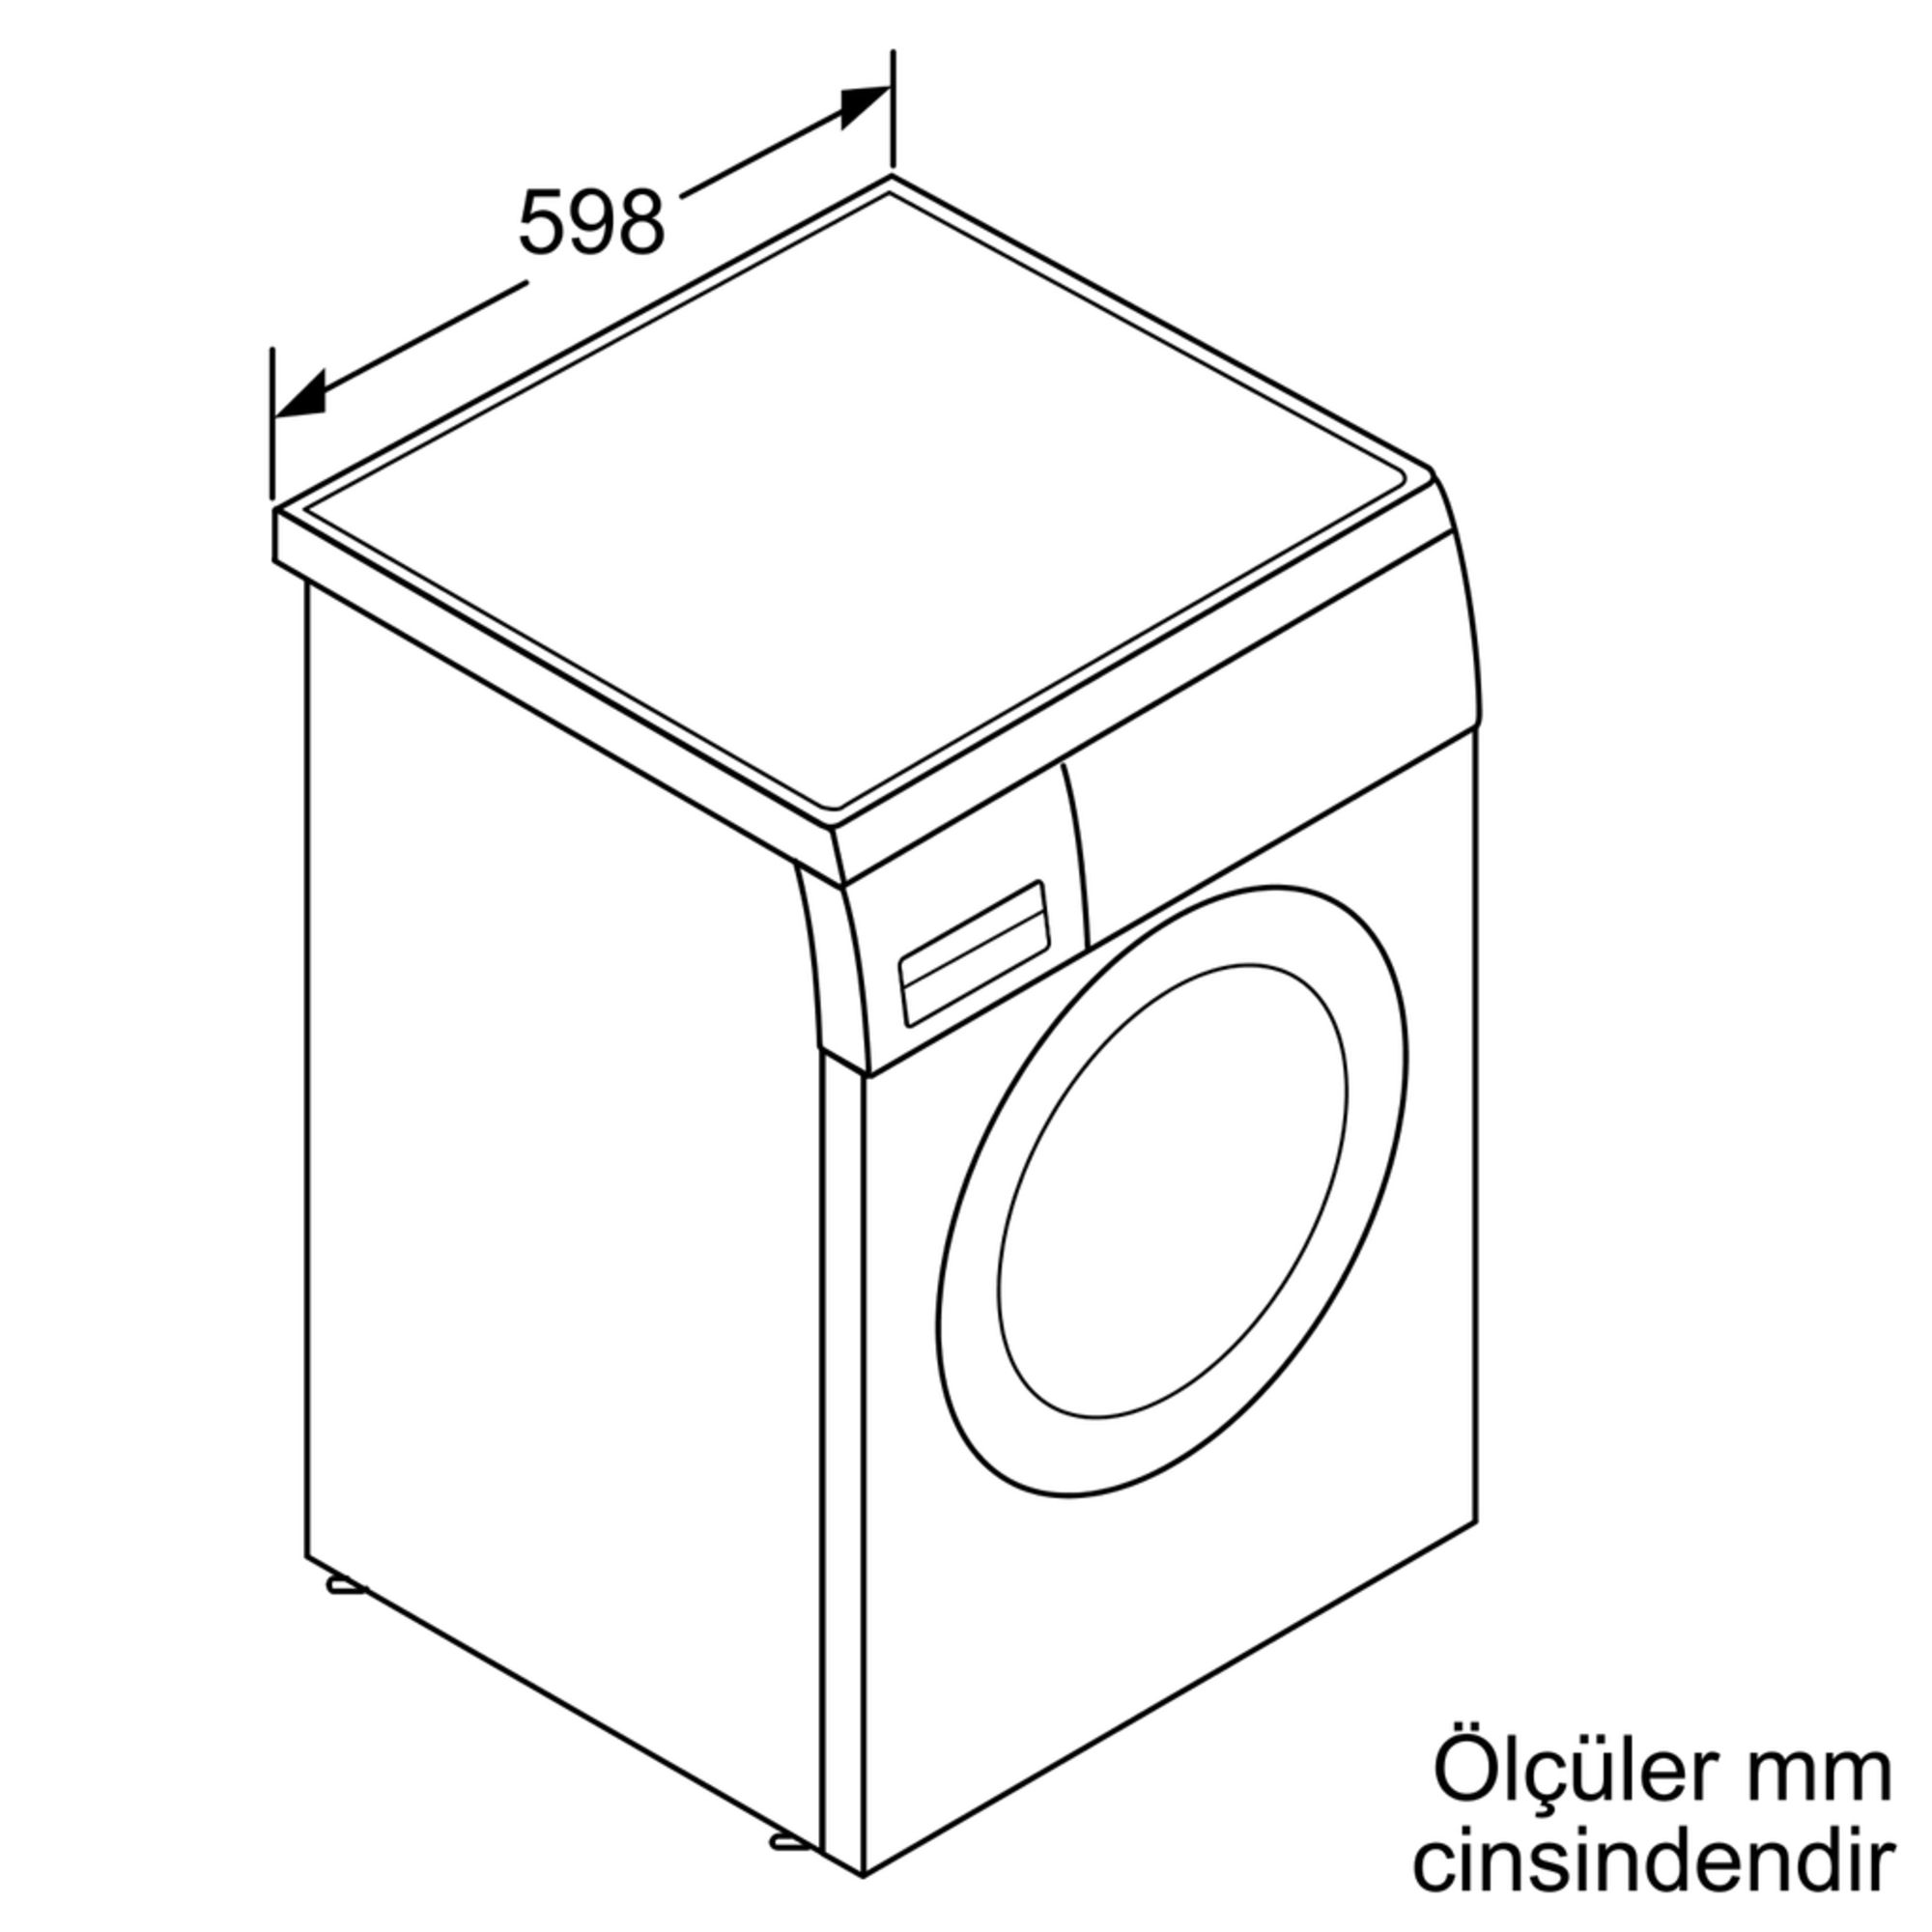 iQ500 Çamaşır Makinası 8 kg 1200 dev./dak.